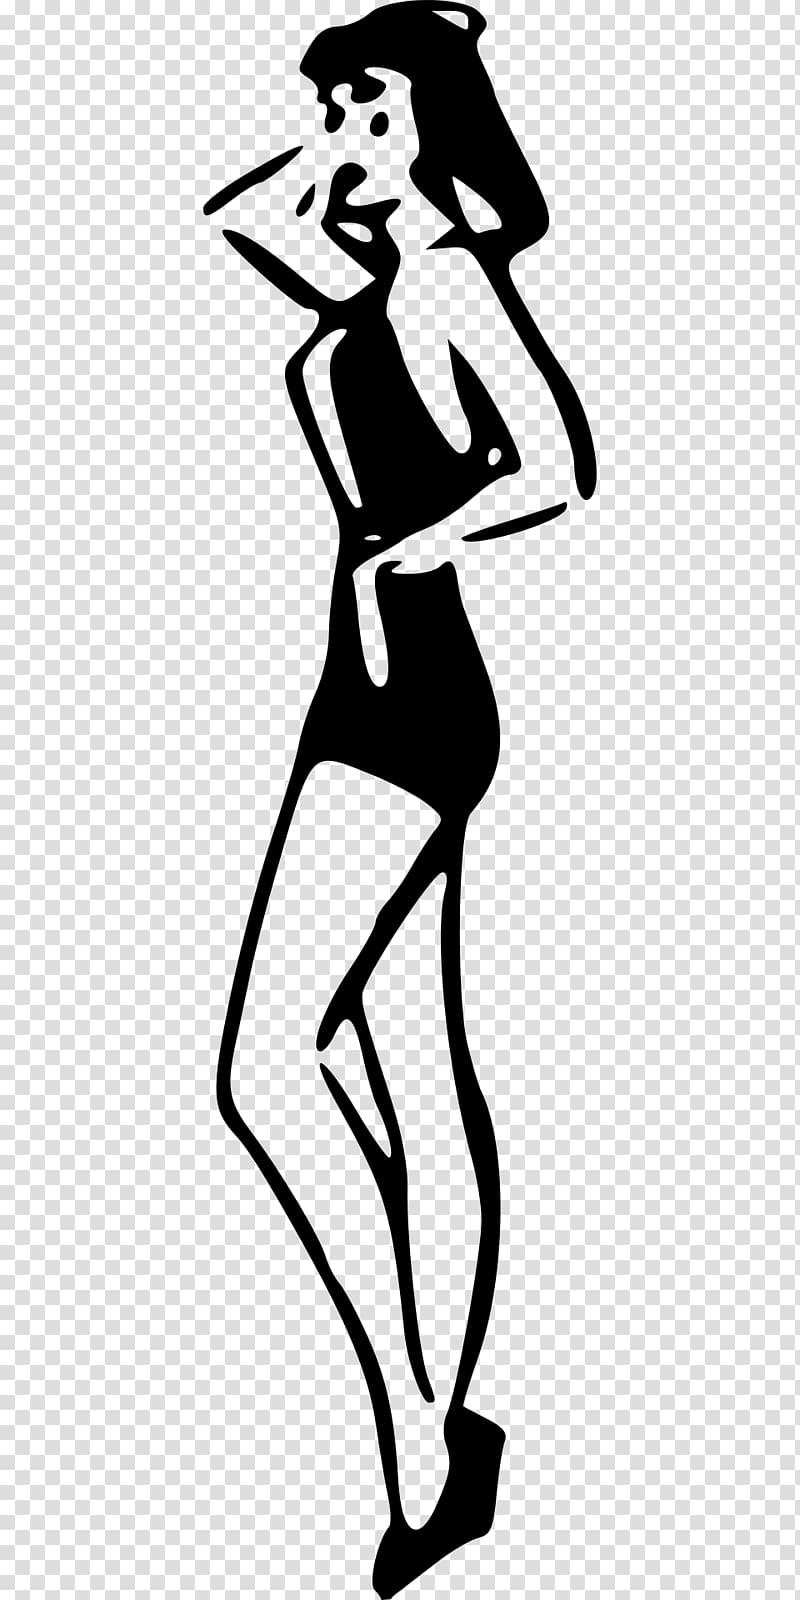 Silhouette Woman, SILUET transparent background PNG clipart